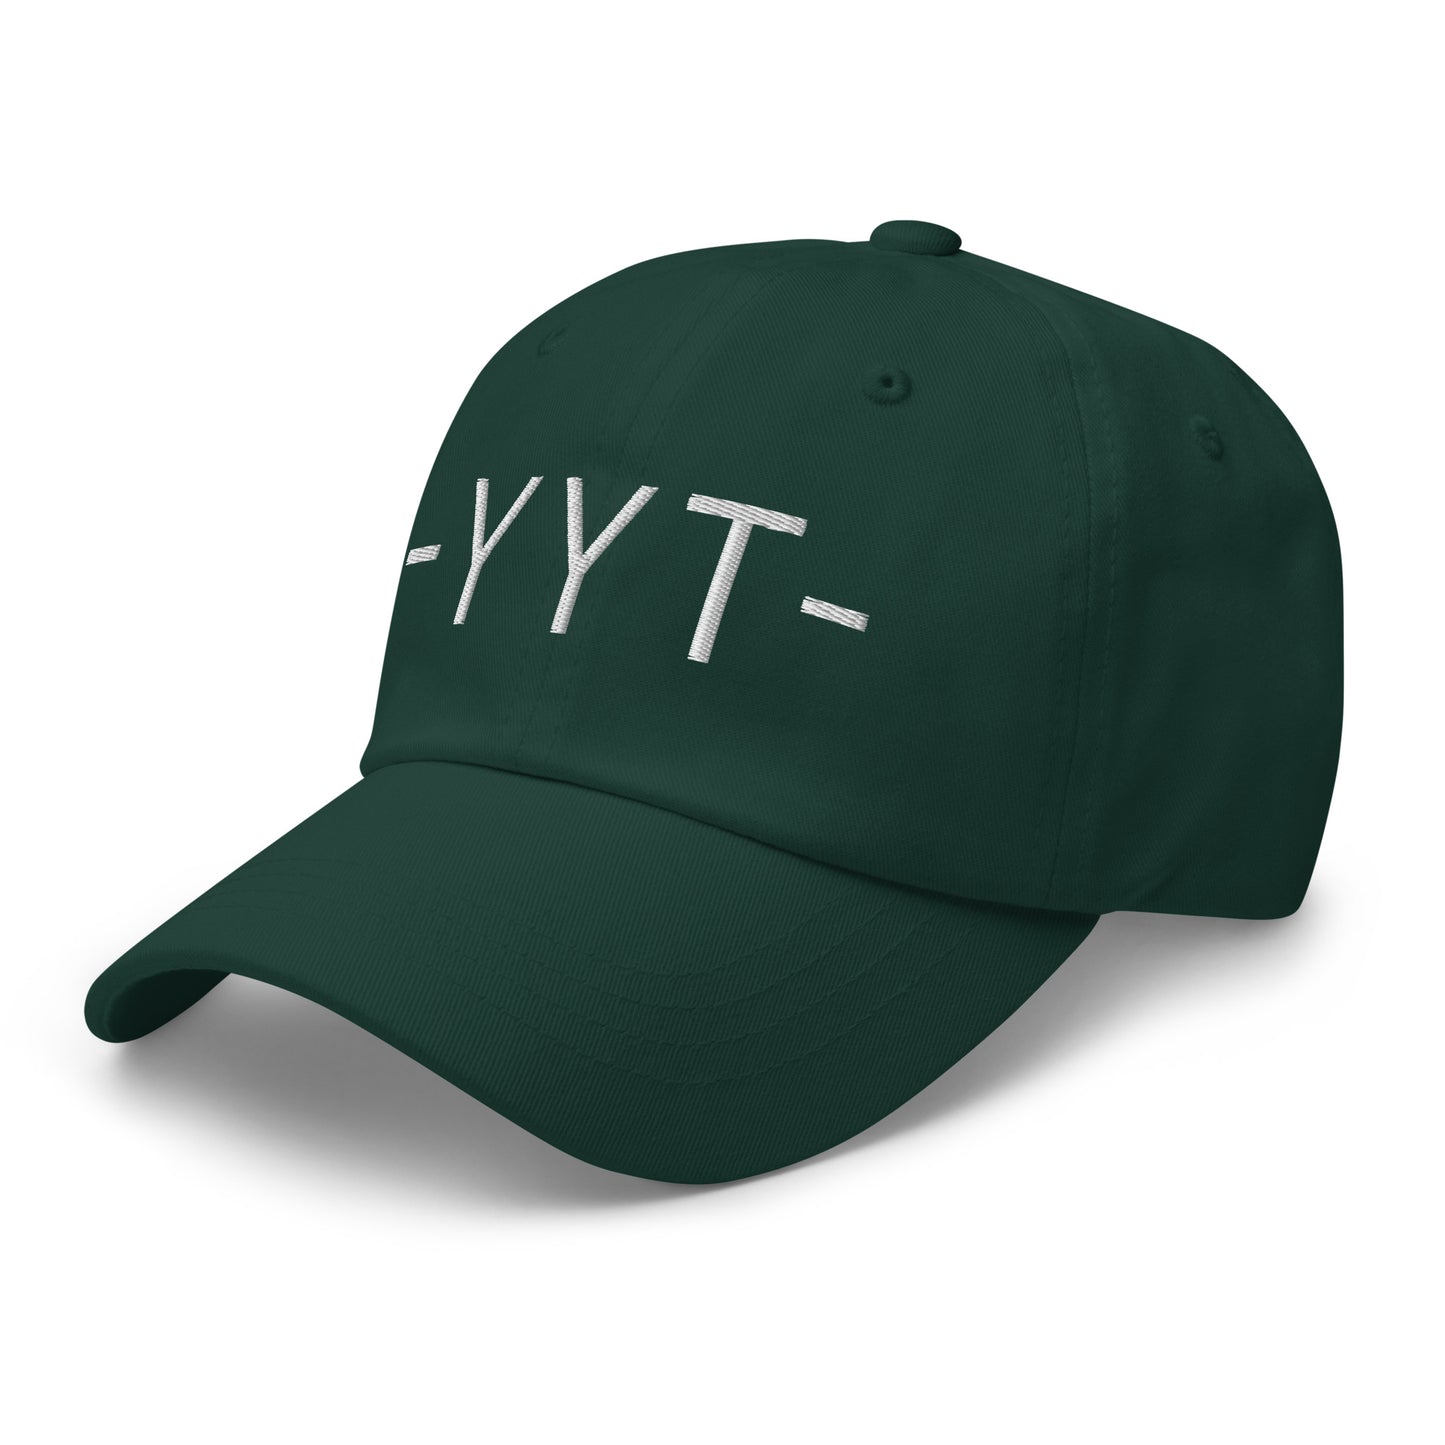 Souvenir Baseball Cap - White • YYT St. John's • YHM Designs - Image 18